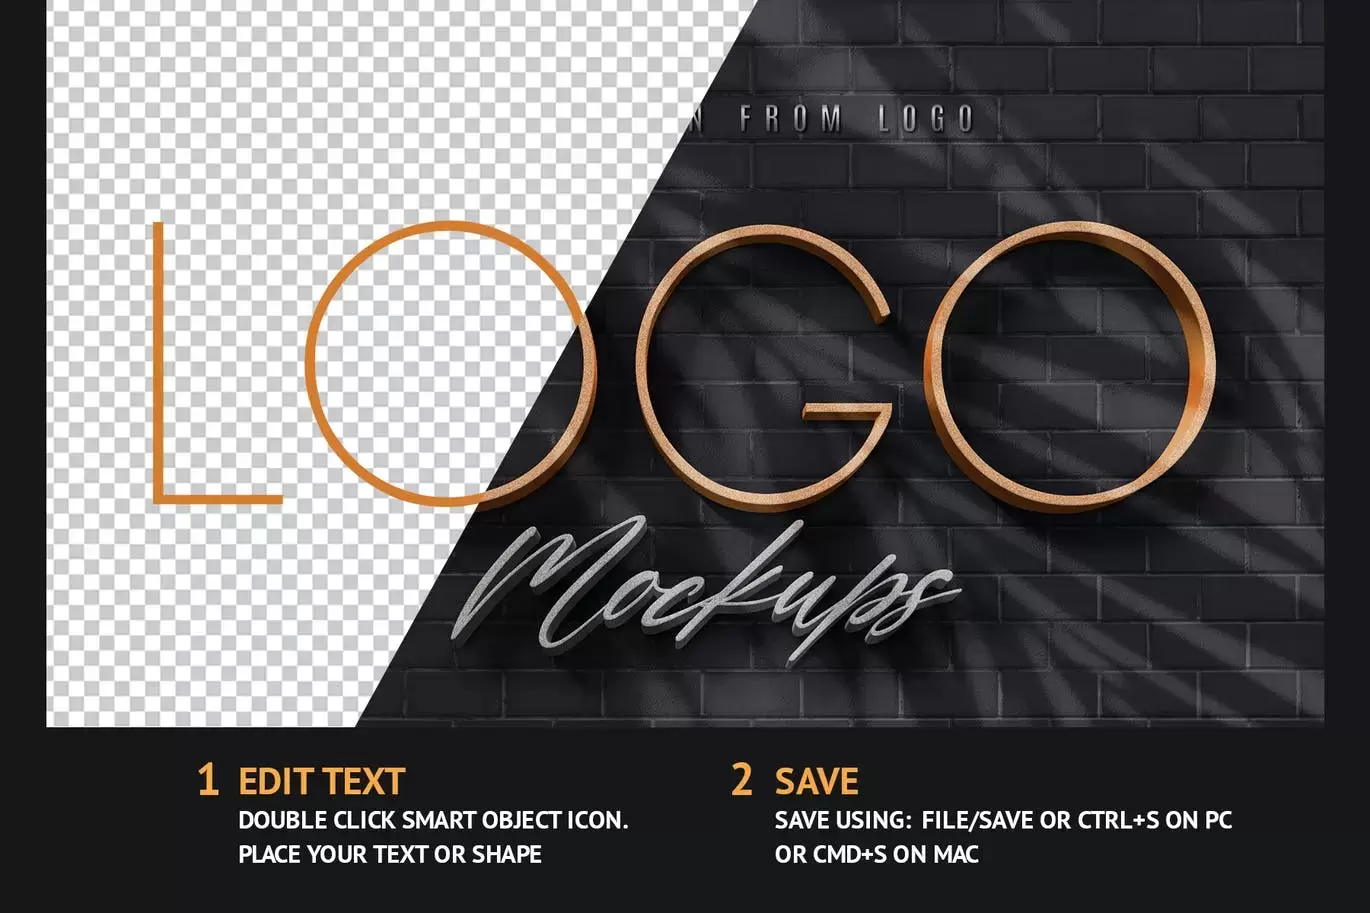 高品质的3D立体logo墙品牌墙VI设计样机展示模型mockups免费下载插图1